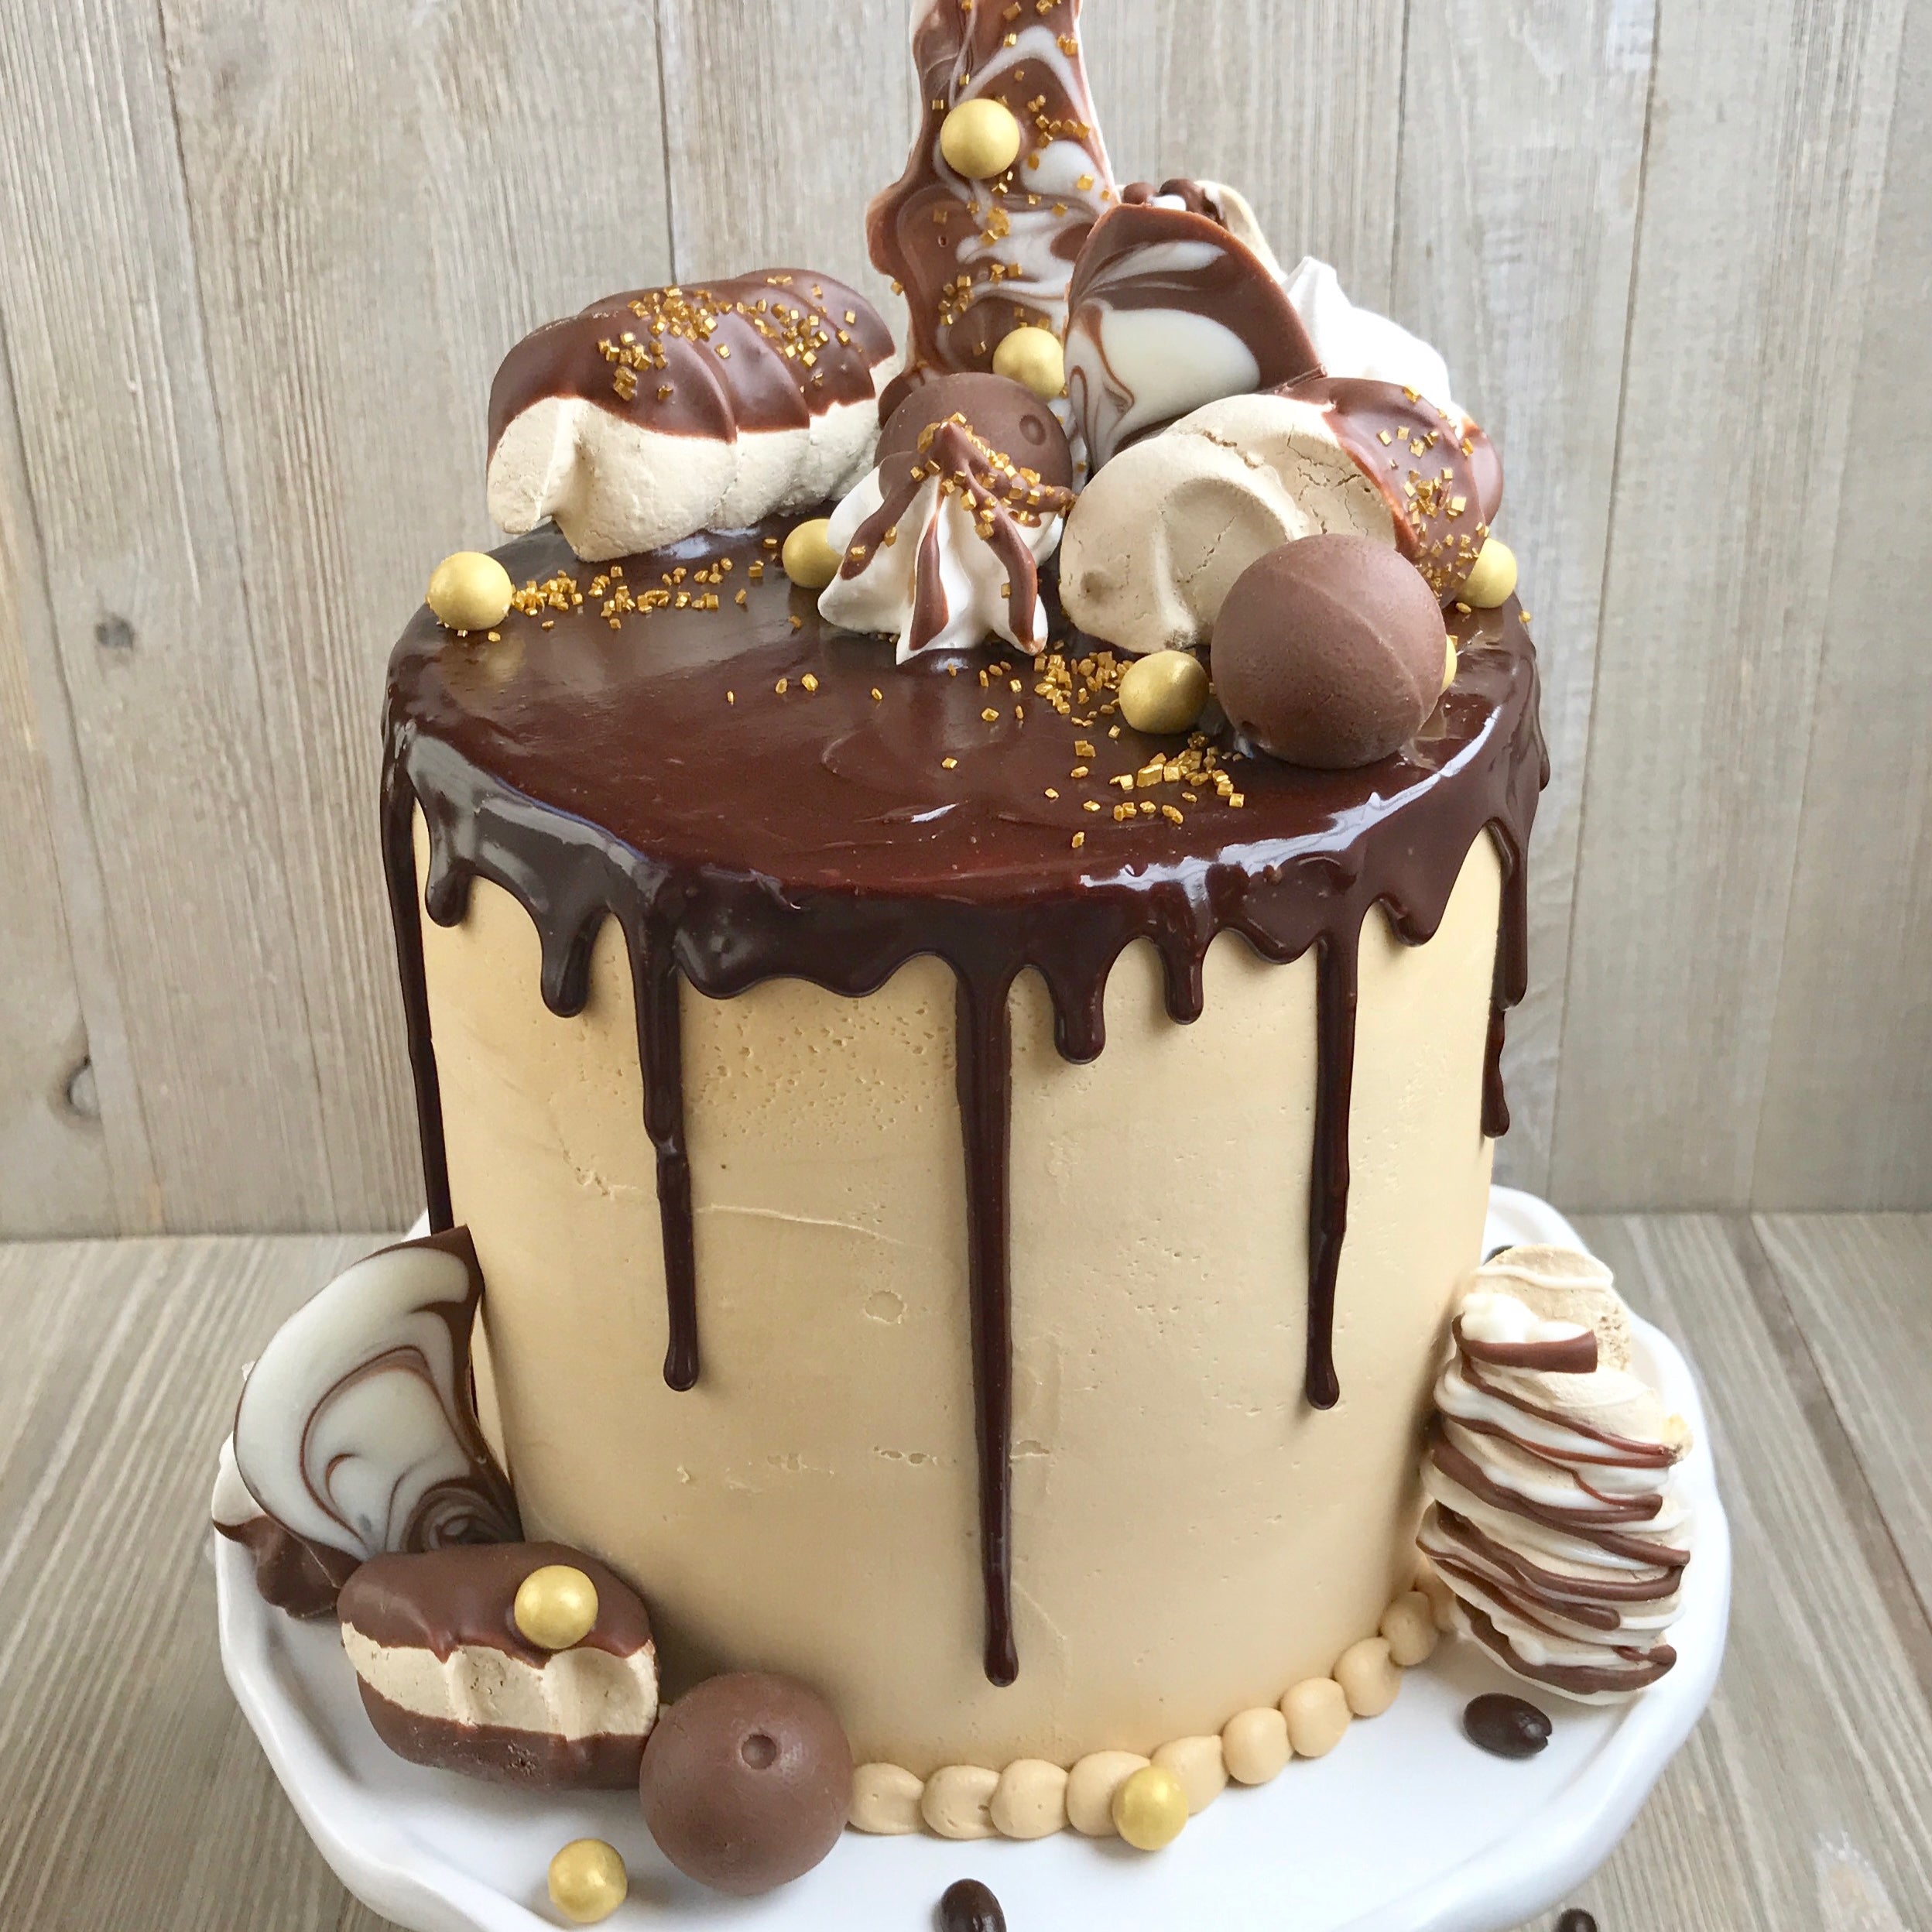 Drip Birthday Cakes - Glorious Treats